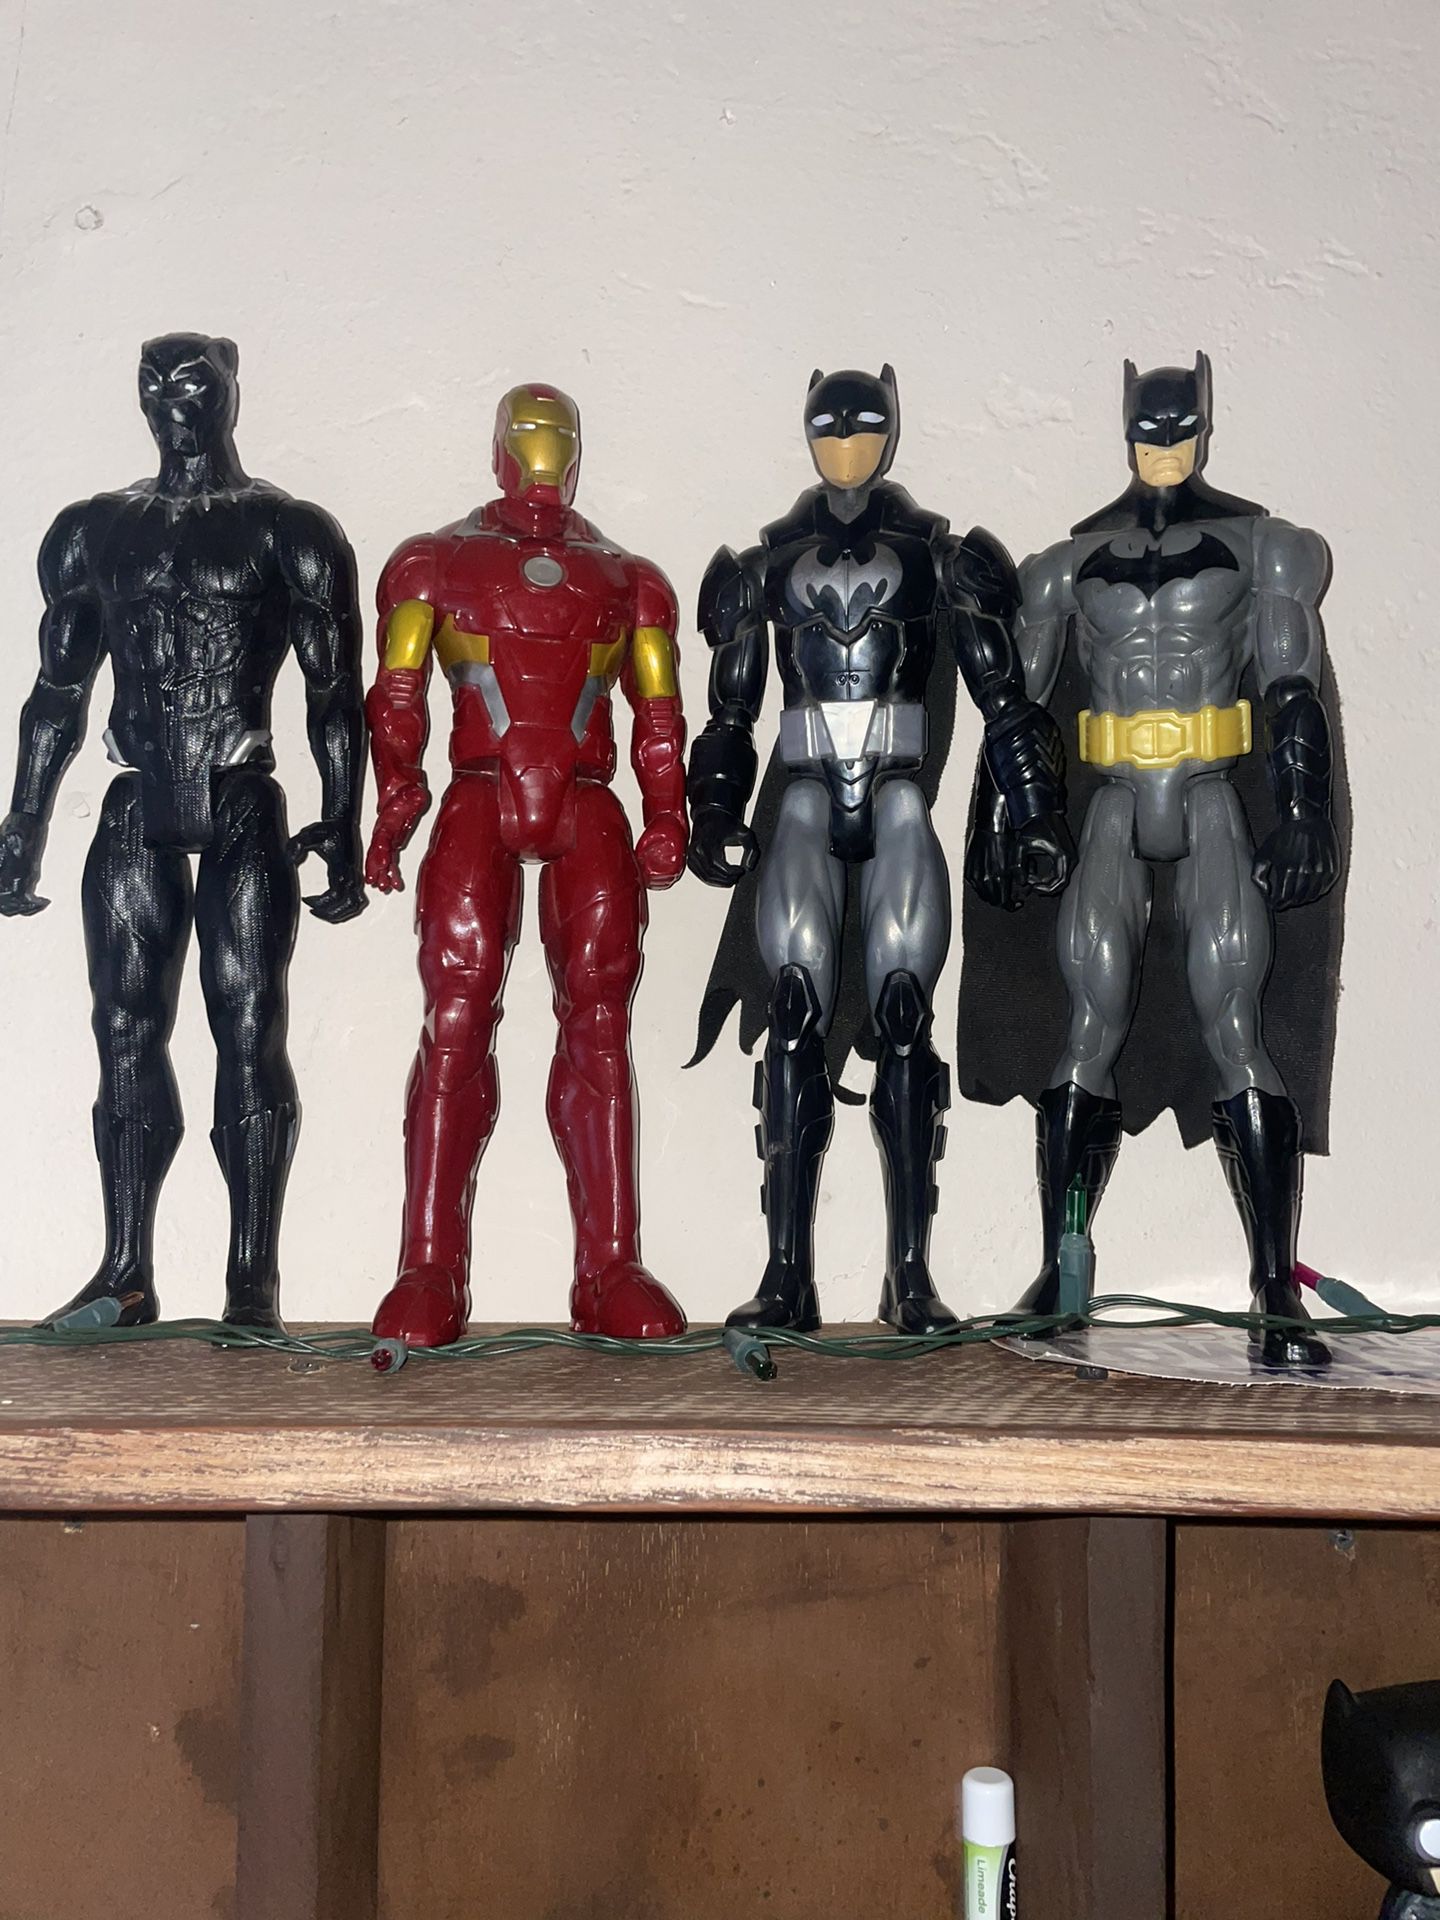 4 Action Figures, 2 Batman, 1 Iron Man, 1 Black Panther